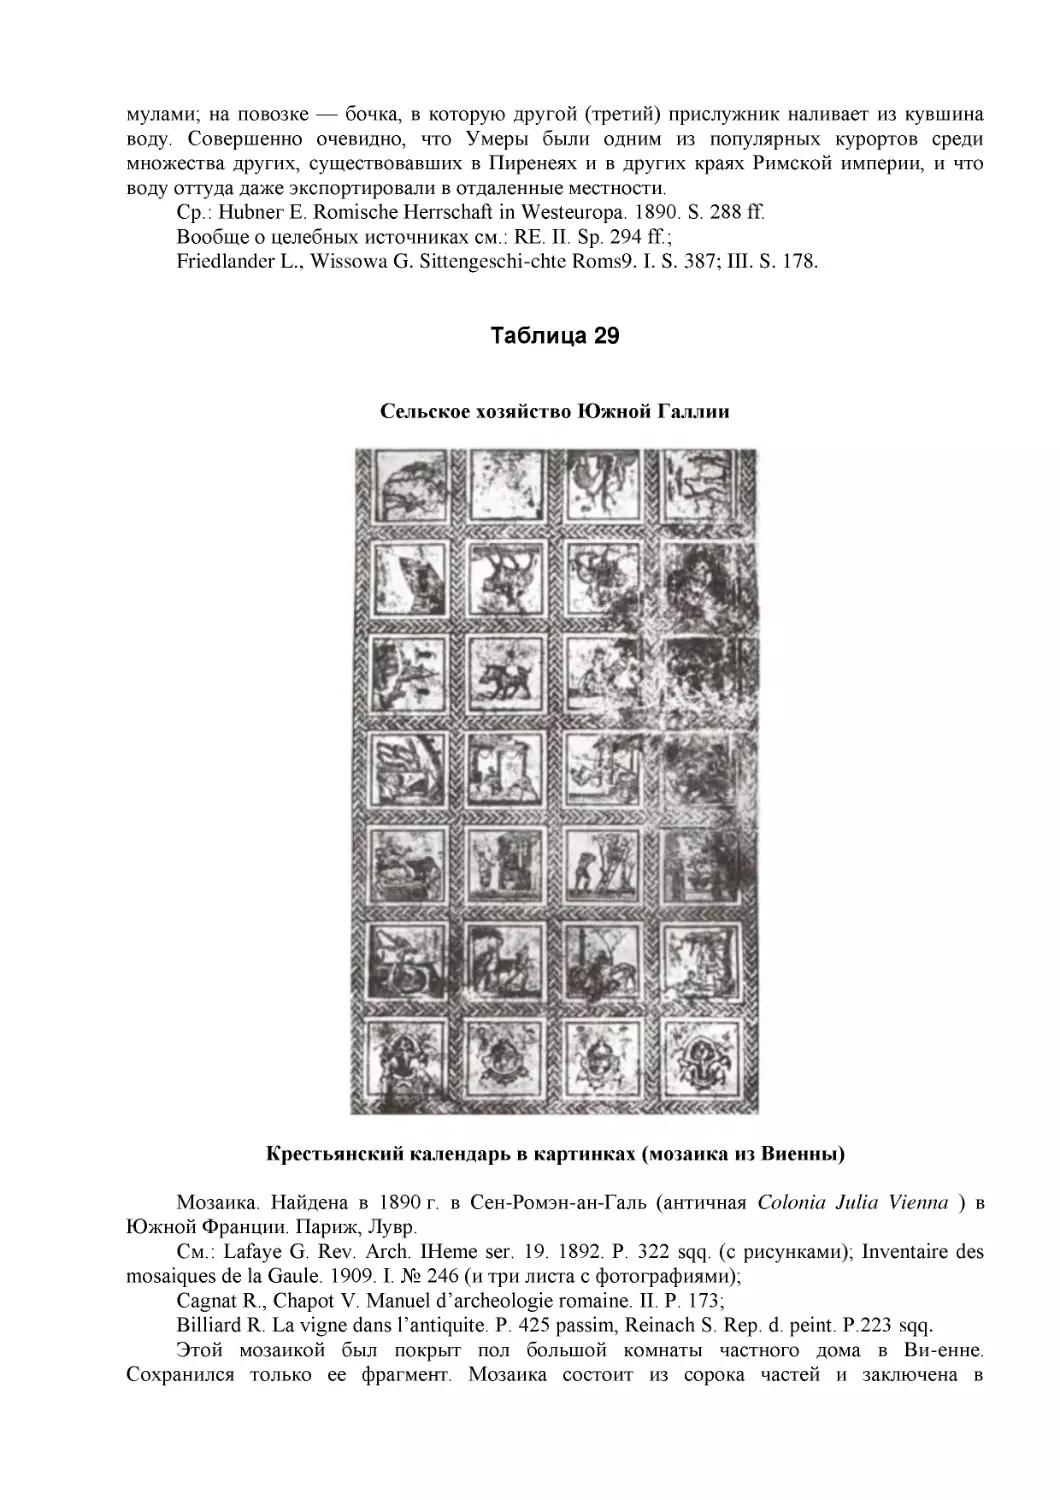 ﻿Таблица 2
﻿Крестьянский календарь в картинках øмозаика из Виенны